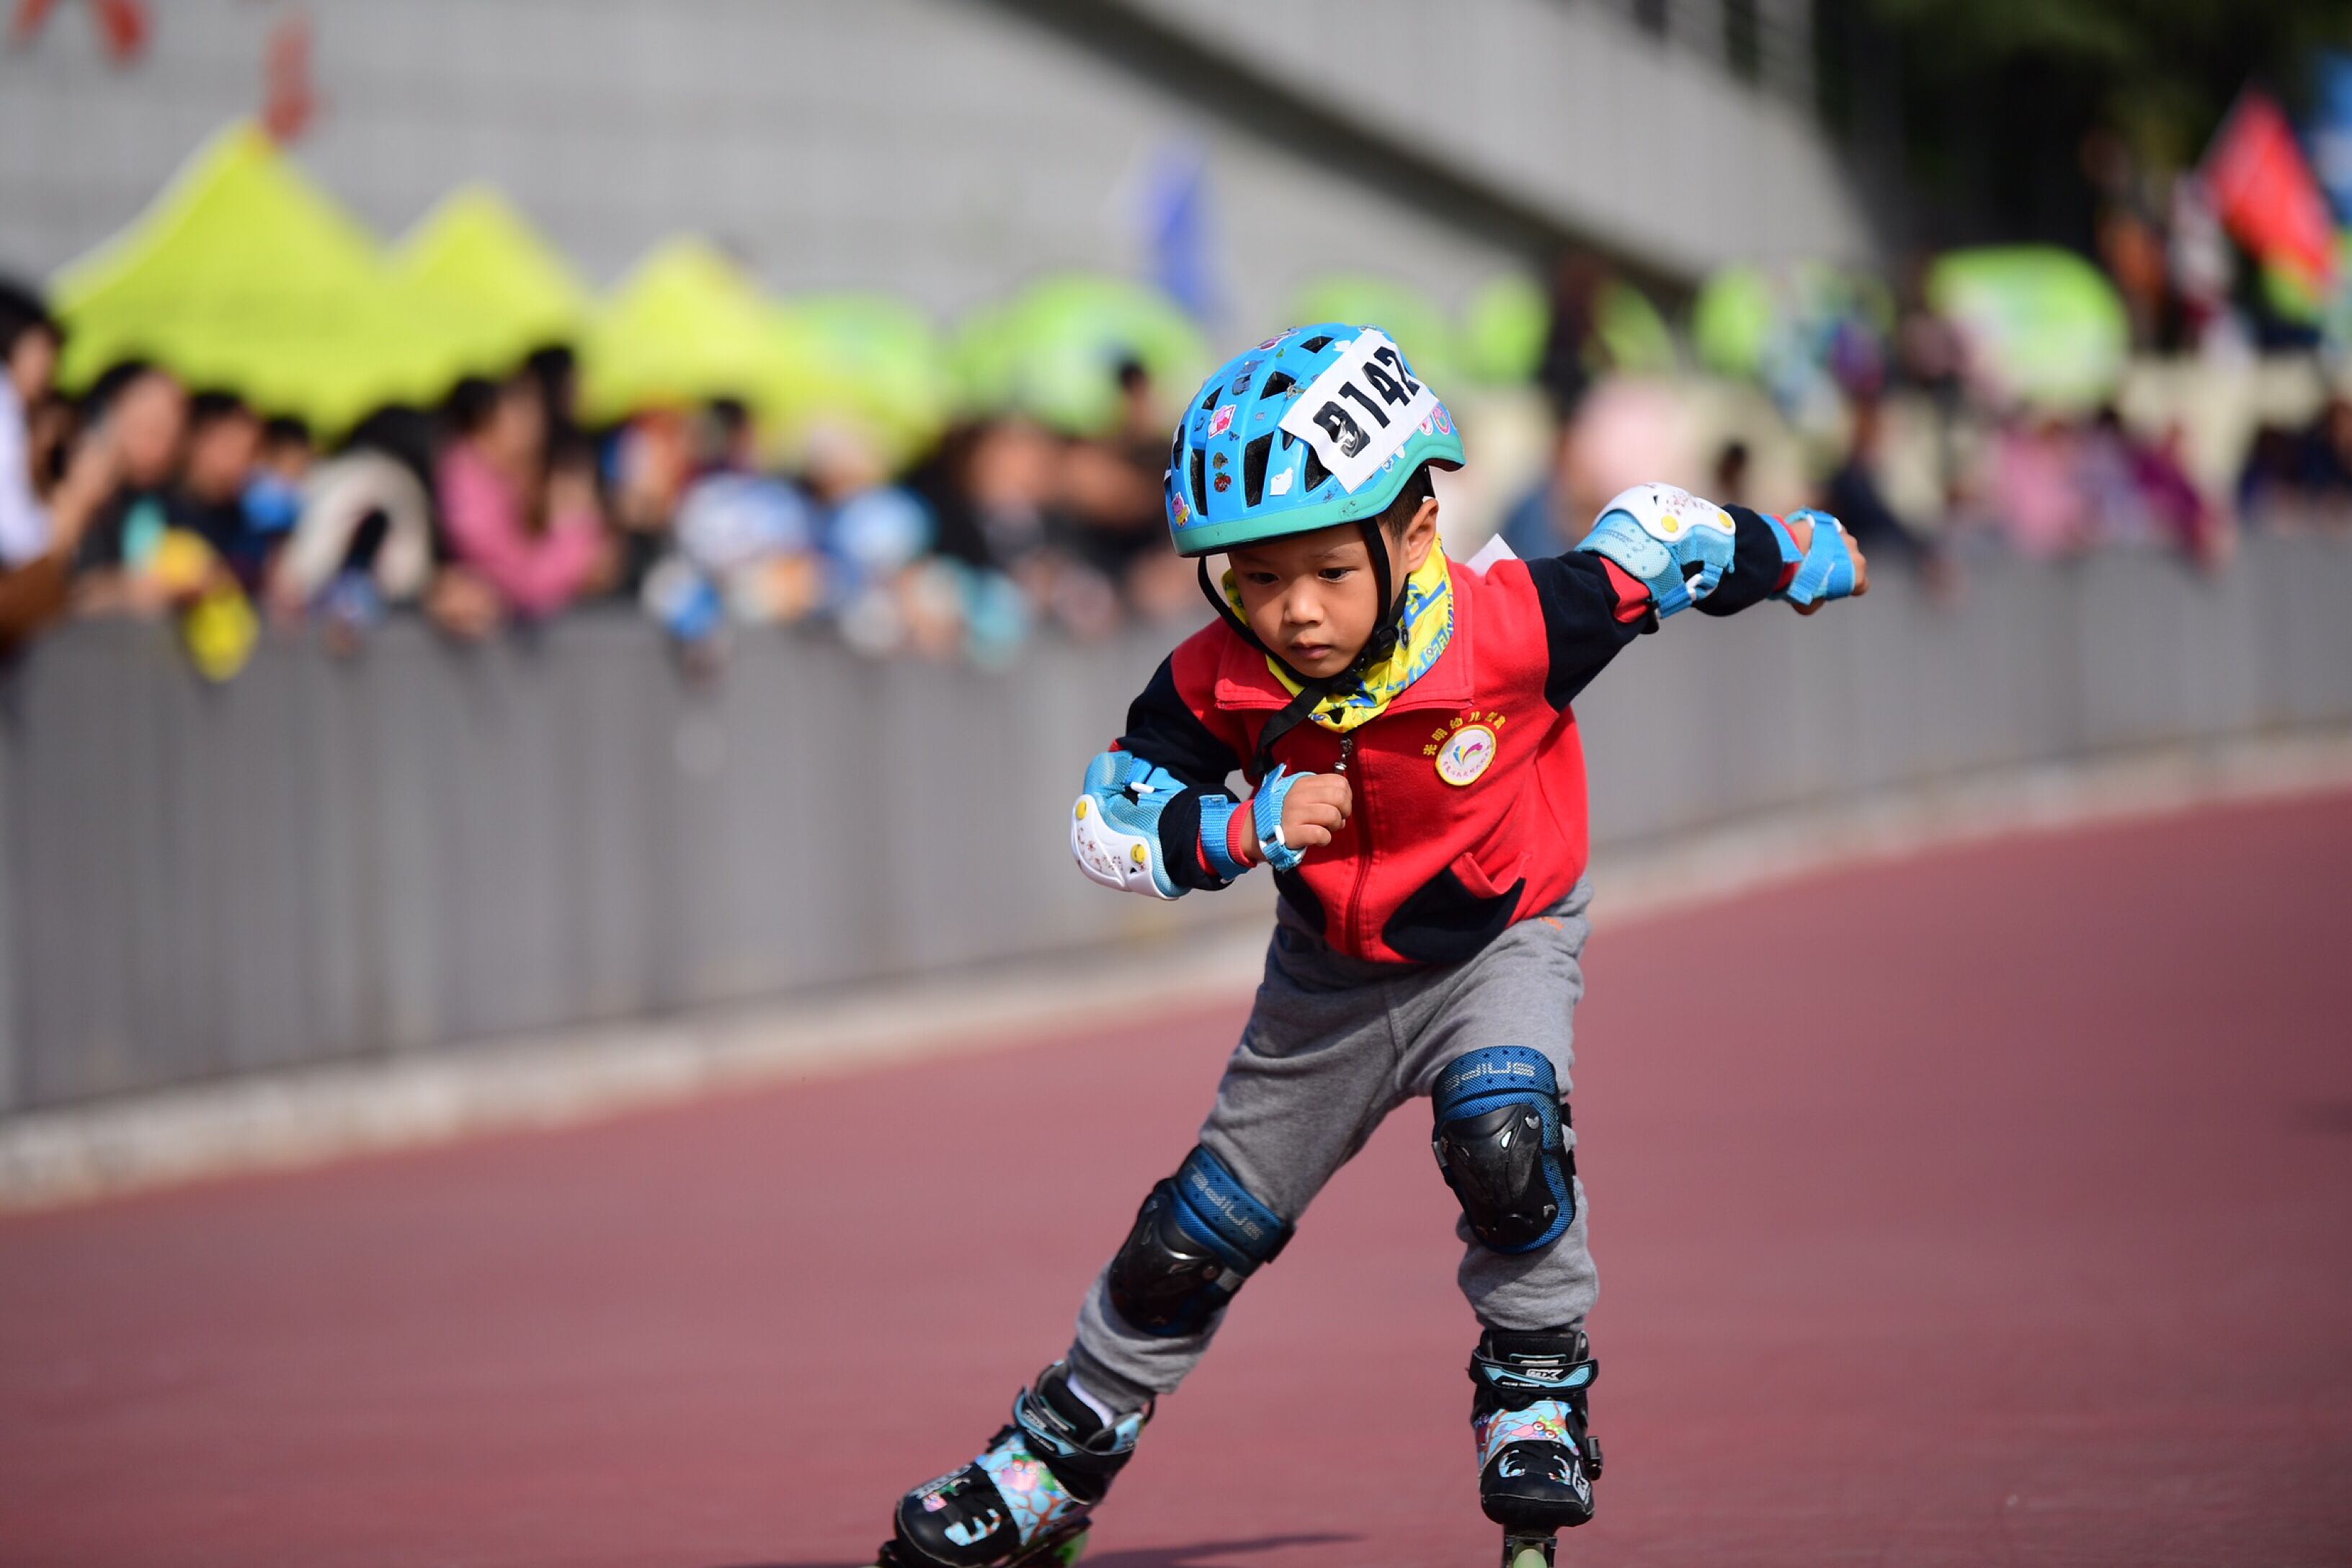 2018合肥市第六届青少年速度轮滑锦标赛在滨湖举行_安徽频道_凤凰网